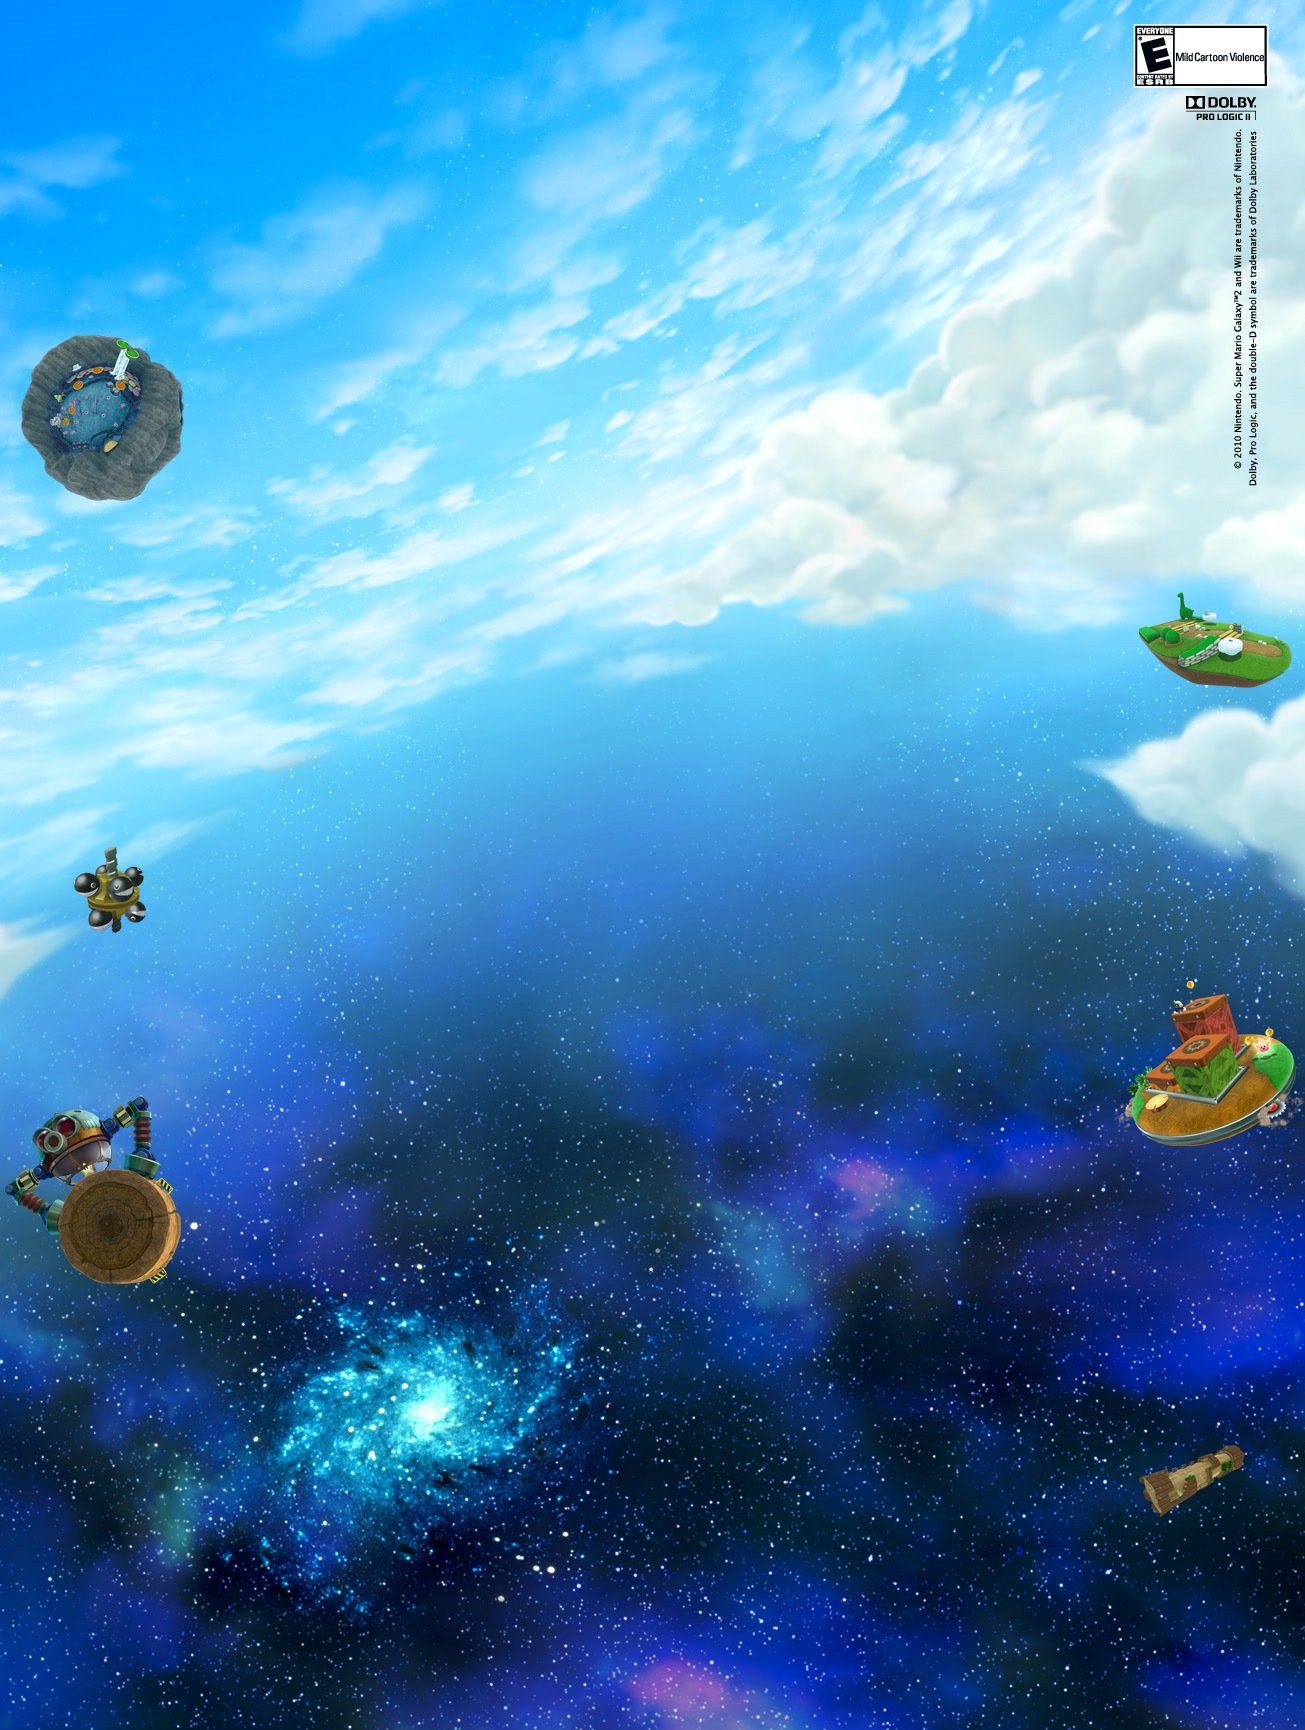 Super Mario Galaxy Background Images là cách tuyệt vời để tô điểm cho màn hình của bạn với những bức ảnh đẹp, tươi sáng và đầy màu sắc. Hãy xem hình ảnh liên quan để cảm nhận được sức sống của thế giới Mario và đồng hành với anh ta trong những cuộc phiêu lưu đầy thú vị.